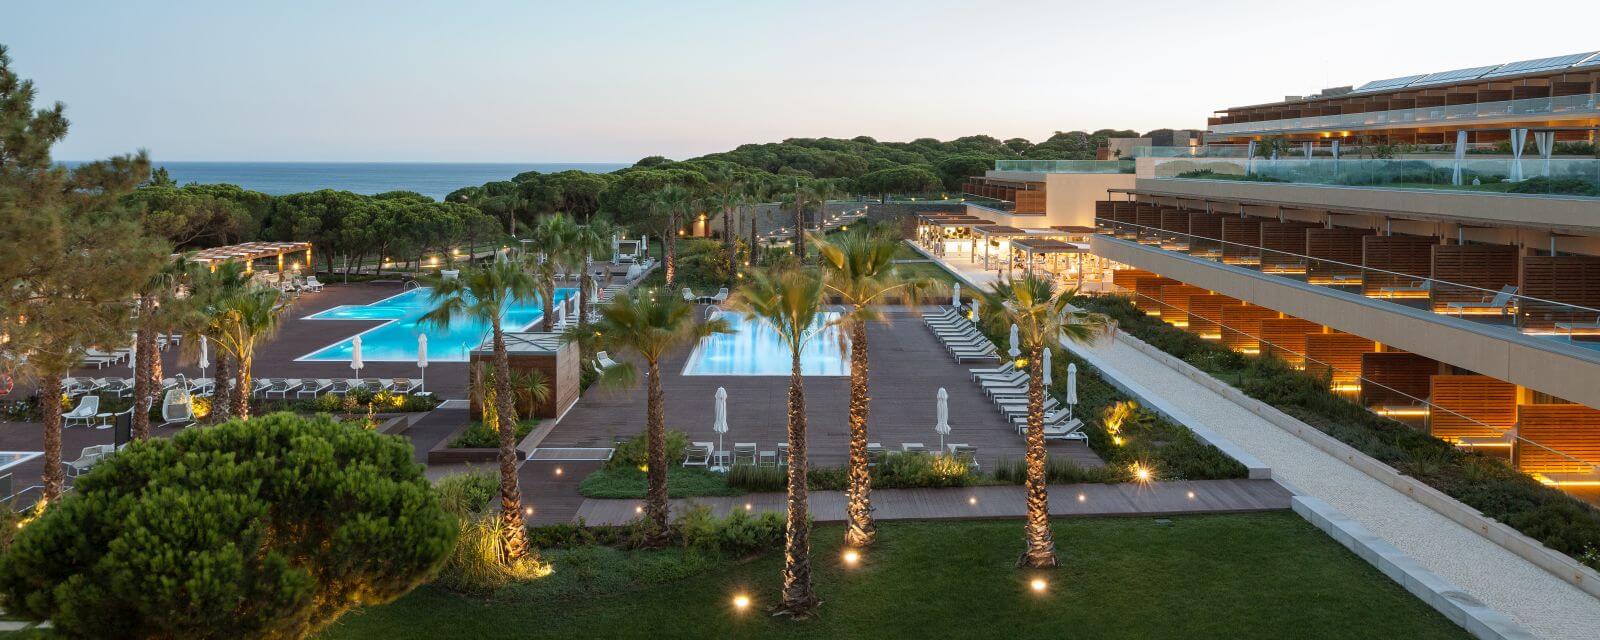 Epic Sana Algarve Hotel Slider1